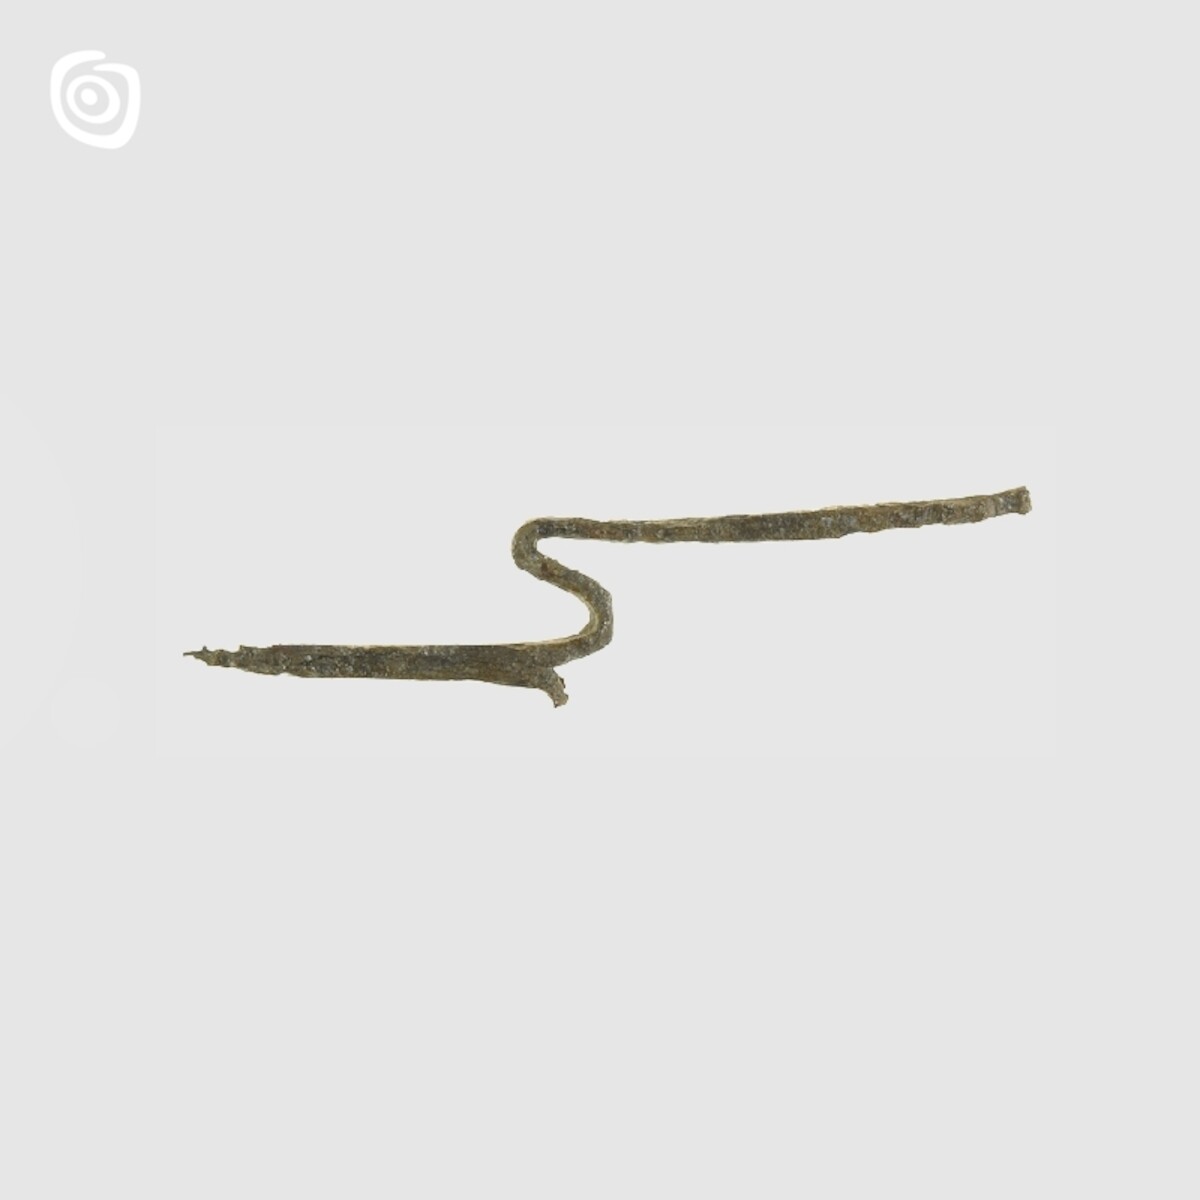 Grot żelaznego ościenia, Rybitwy, XI-XII w.